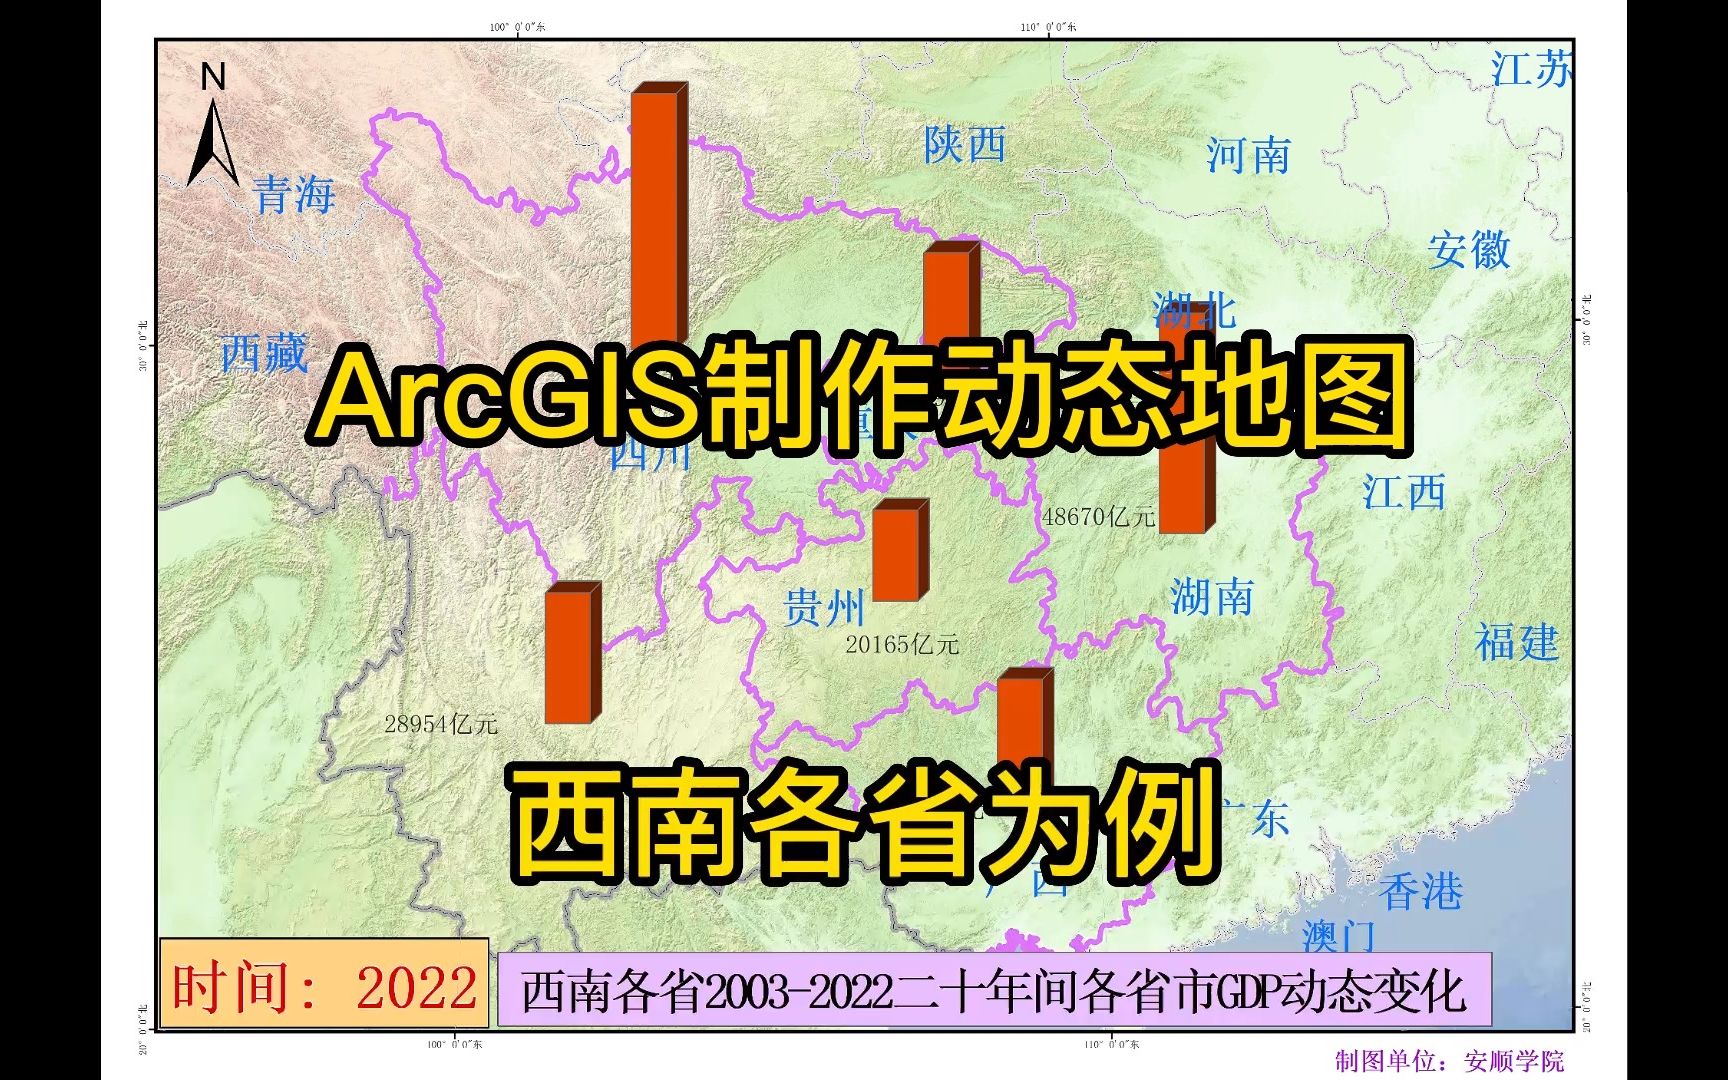 17.4 ArcGIS制作动态地图 西南各省为例